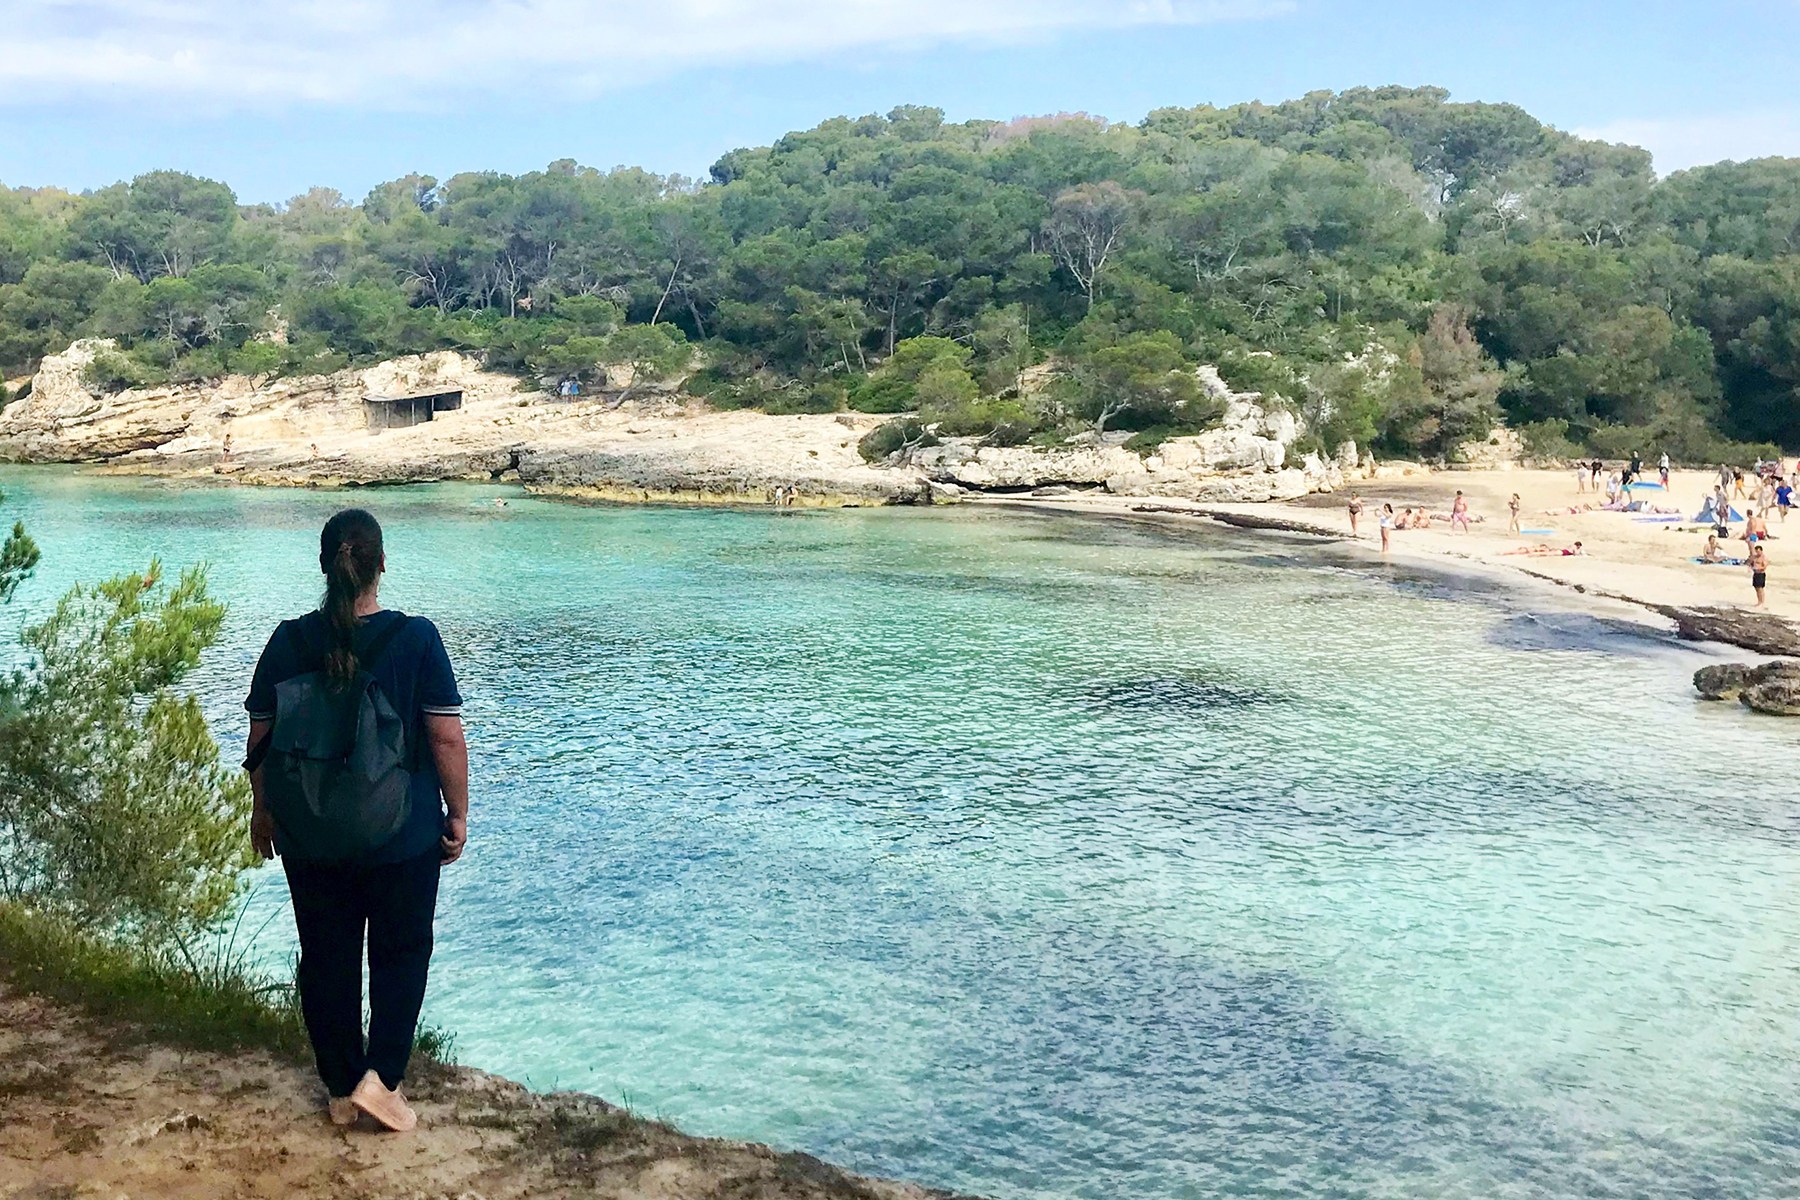  Sehnsucht nach Meer: 7 Gründe für einen Urlaub auf Menorca